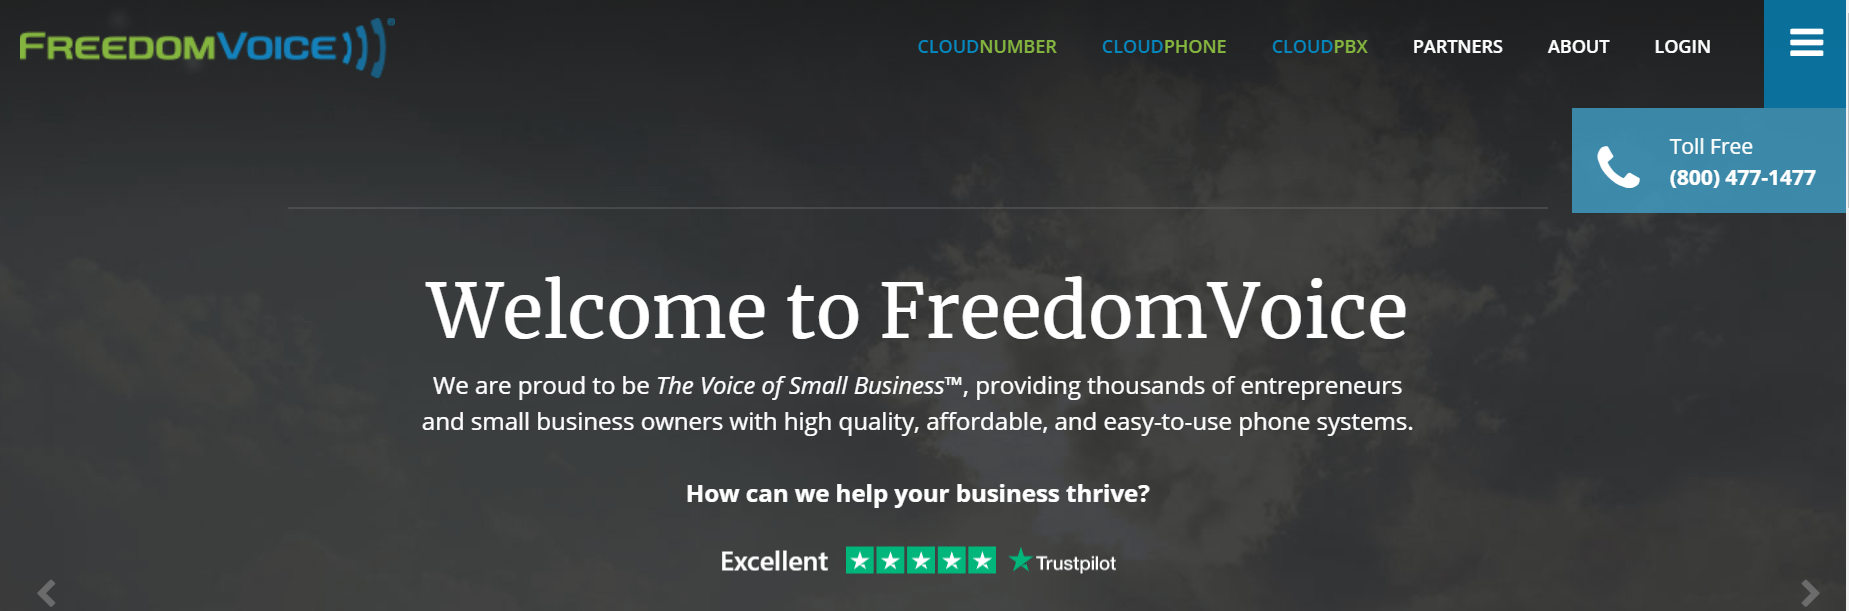 FreedomVoice主頁。